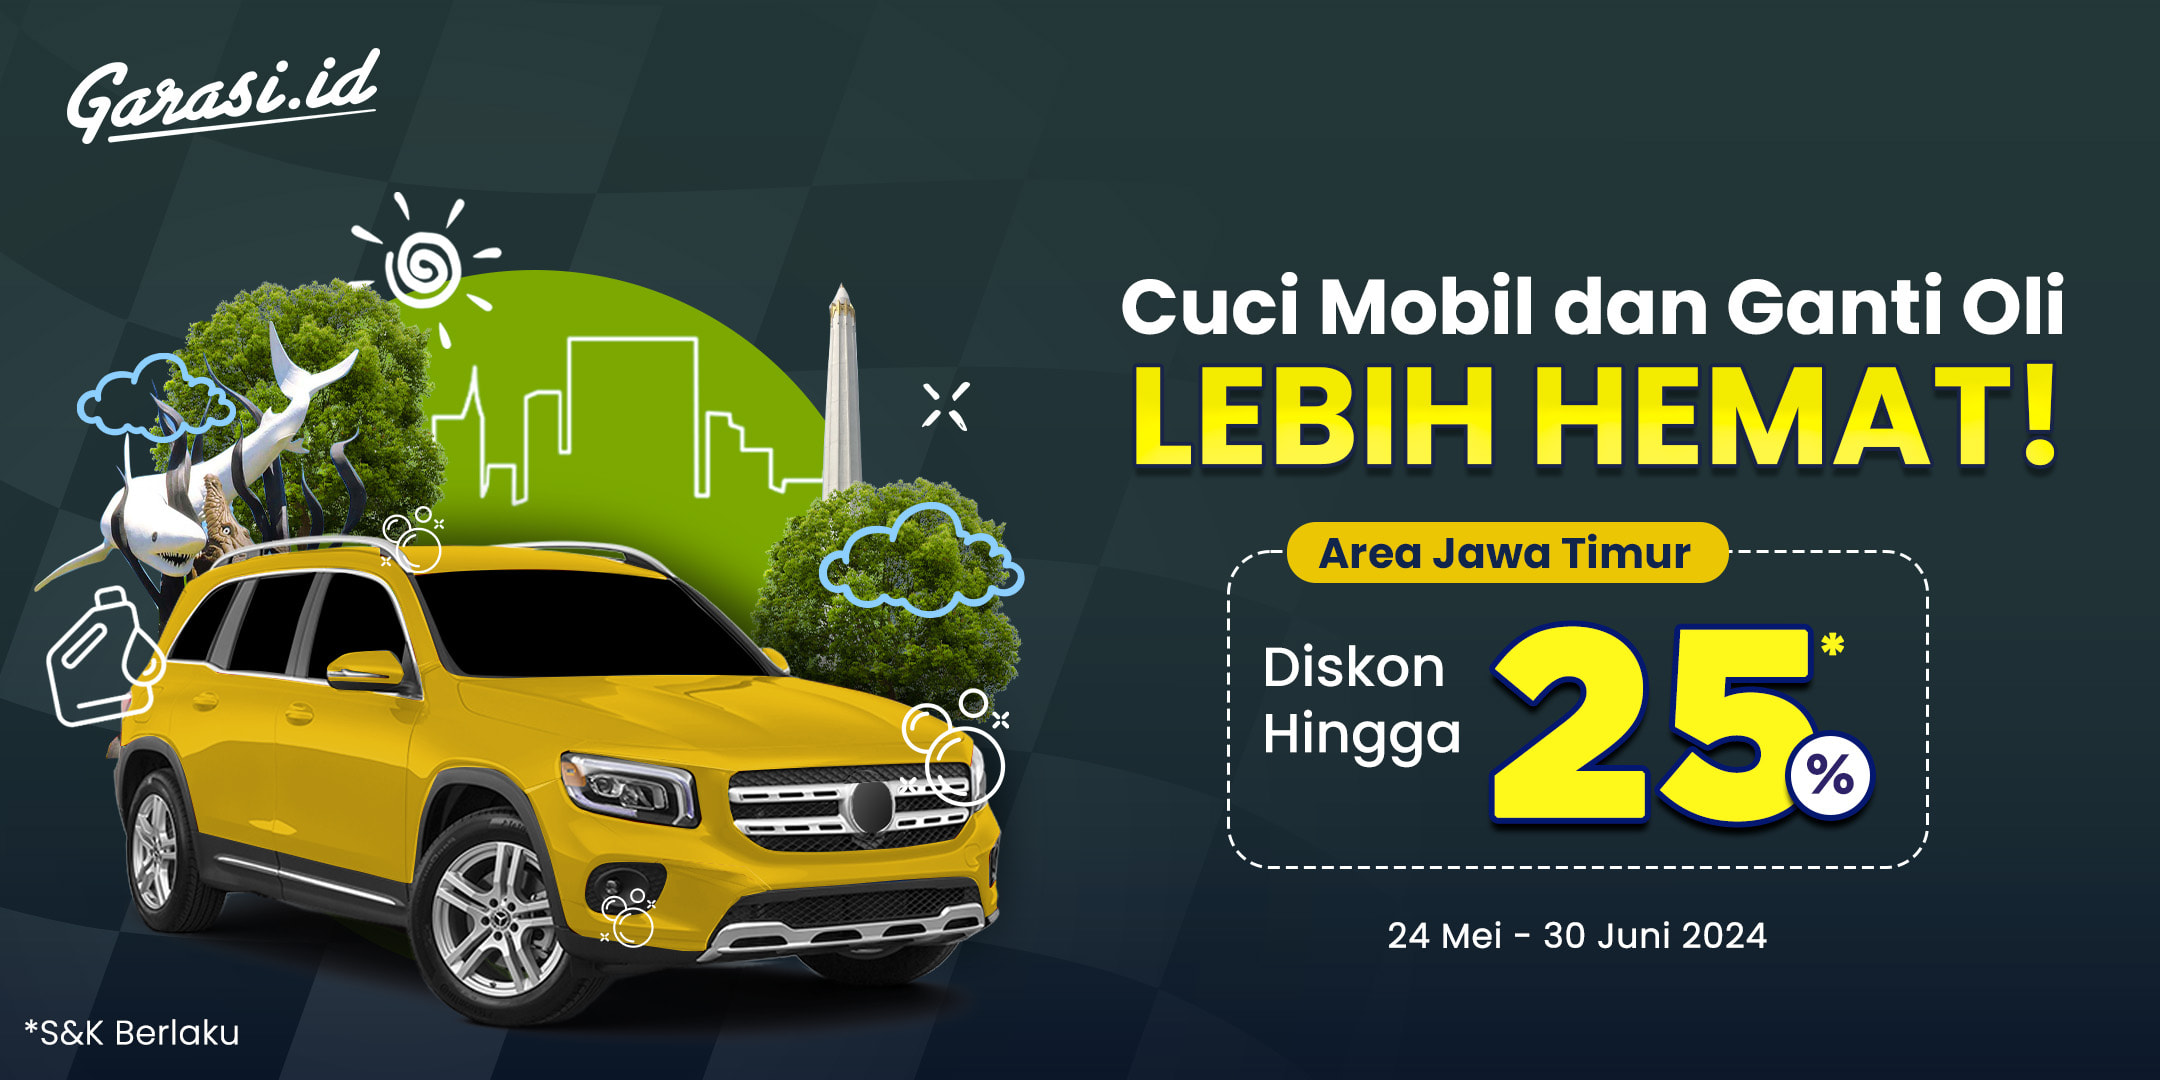 Nikmati harga khusus untuk “Ganti Oli & Cuci Mobil” khusus area Jawa Timur dengan membeli voucher servis di Garasi.id, kamu tidak perlu khawatir dengan kondisi mobil kamu apabila kamu berencana bepergian.